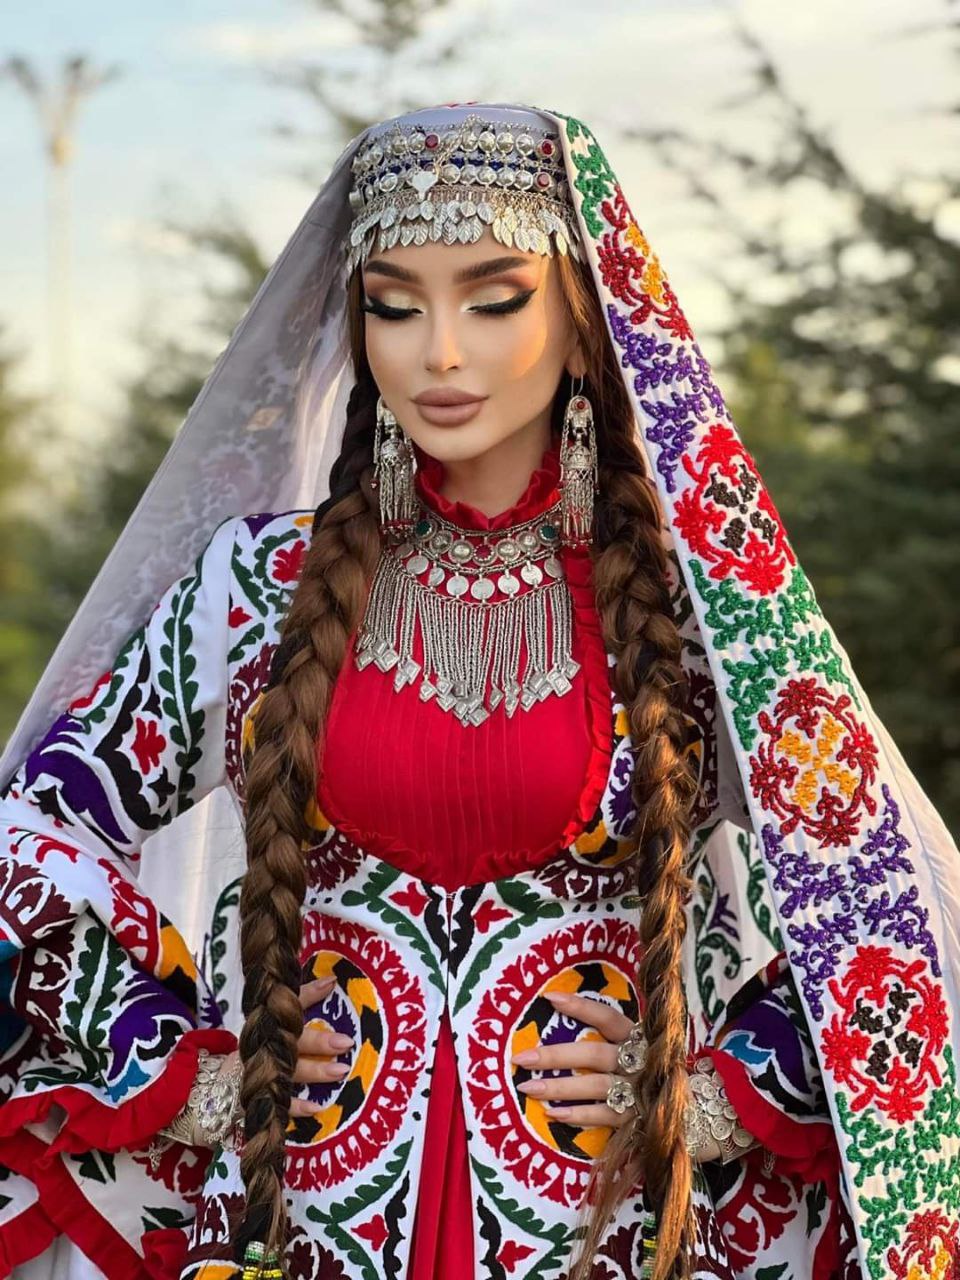 Молодая девушка таджик. Таджикистан девушки. Таджикистан люди внешность. Таджикские девушки в национальной одежде. Таджикские девушки в национальных нарядах.